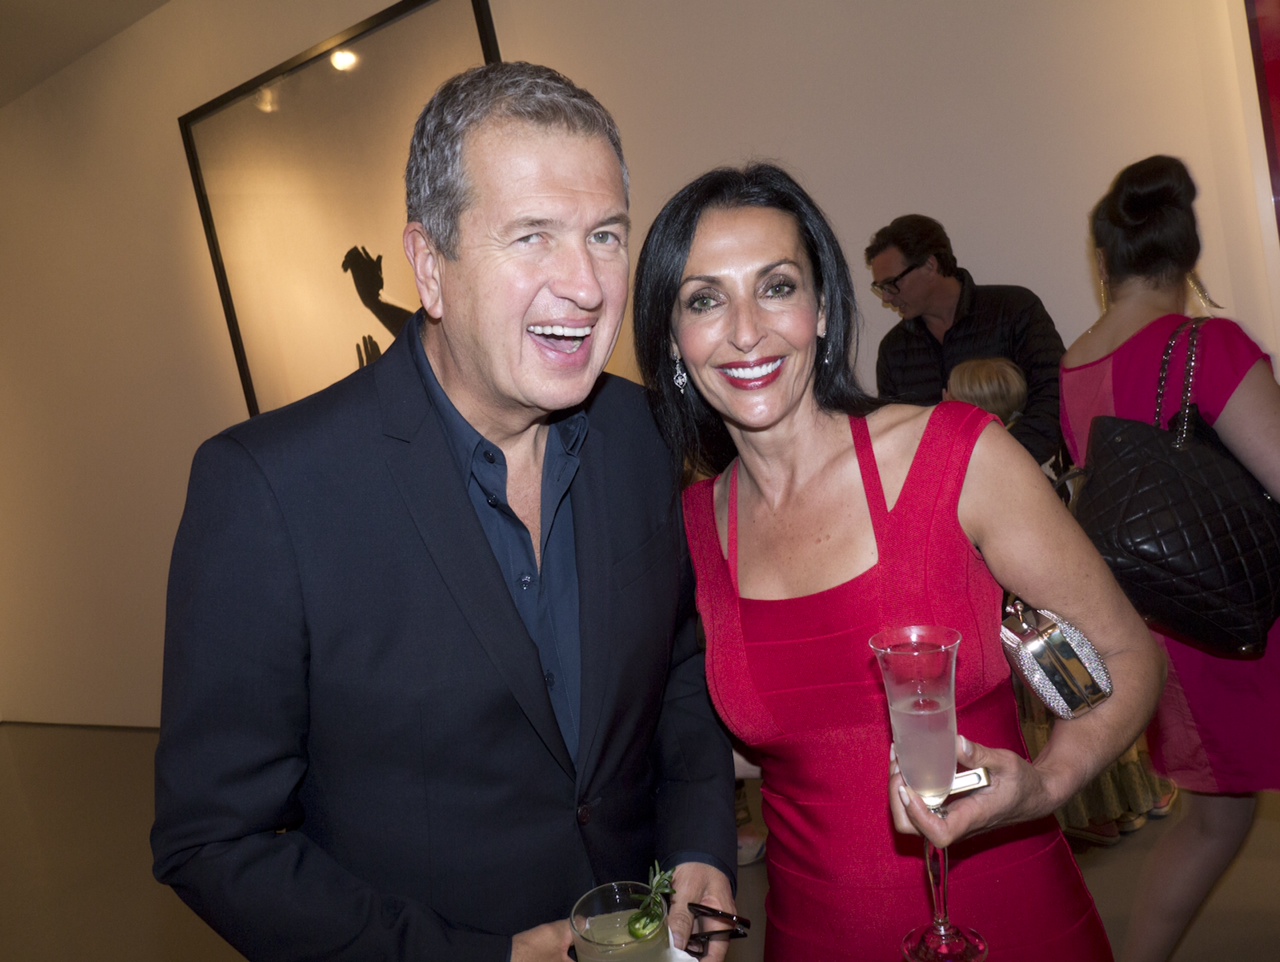 Mario Testino and Ghada Dergham at Prism Exhibit